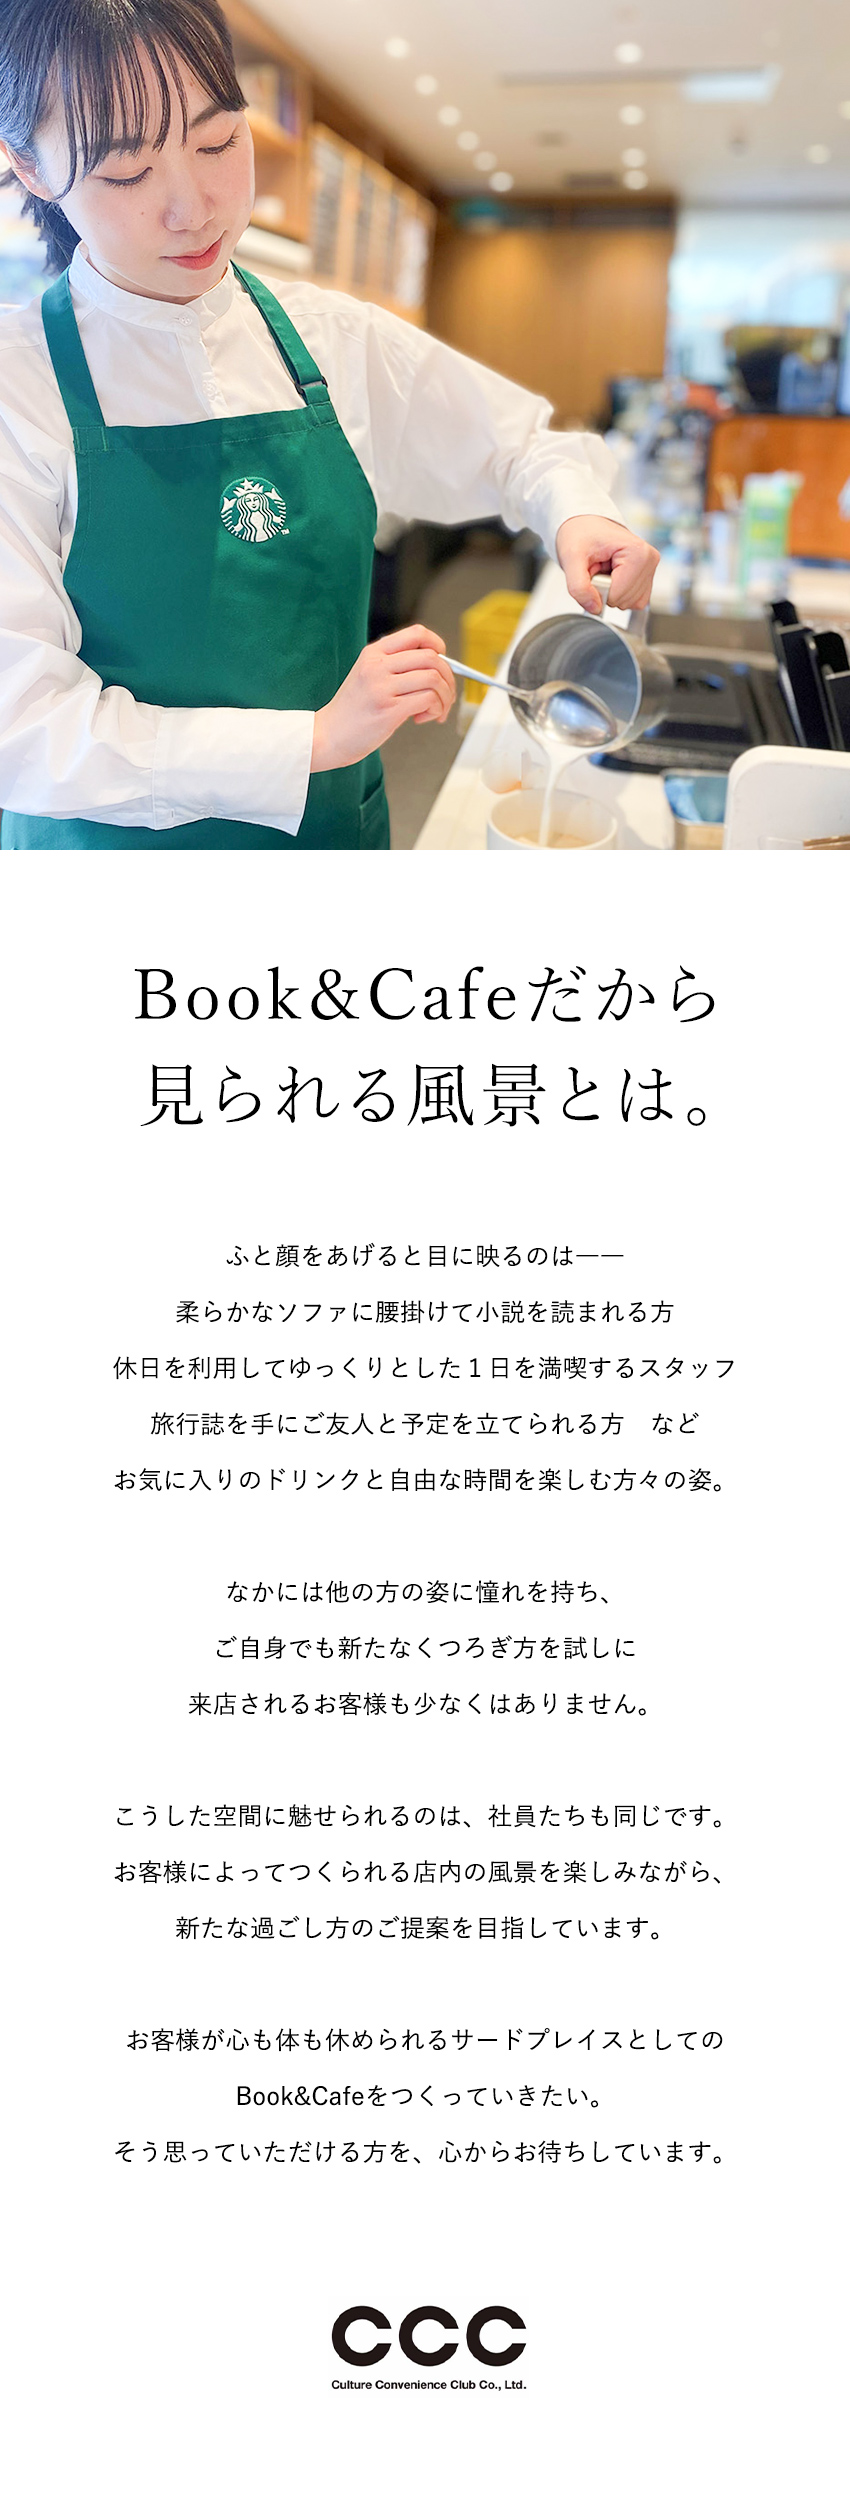 カルチュア・コンビニエンス・クラブ株式会社 Book&Cafe（スターバックス）の店長候補／年休121日